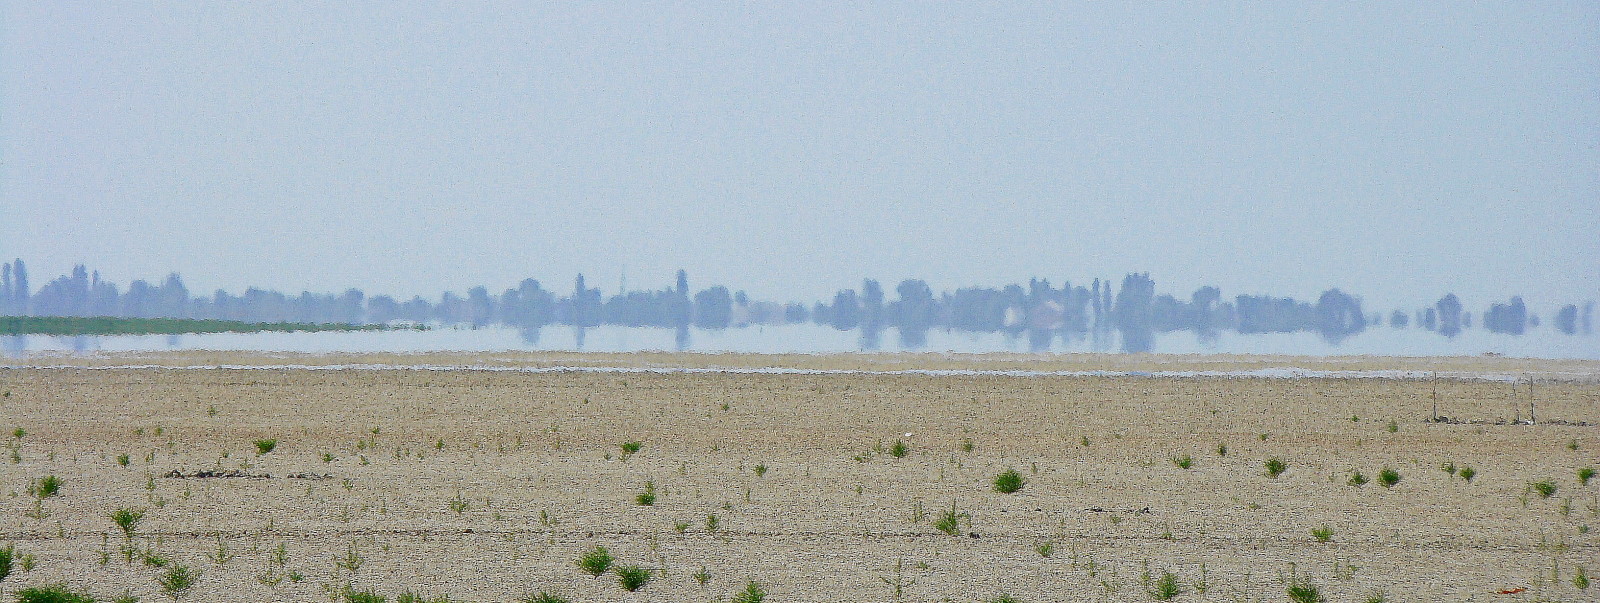 Ханское озеро, изображение ландшафта.